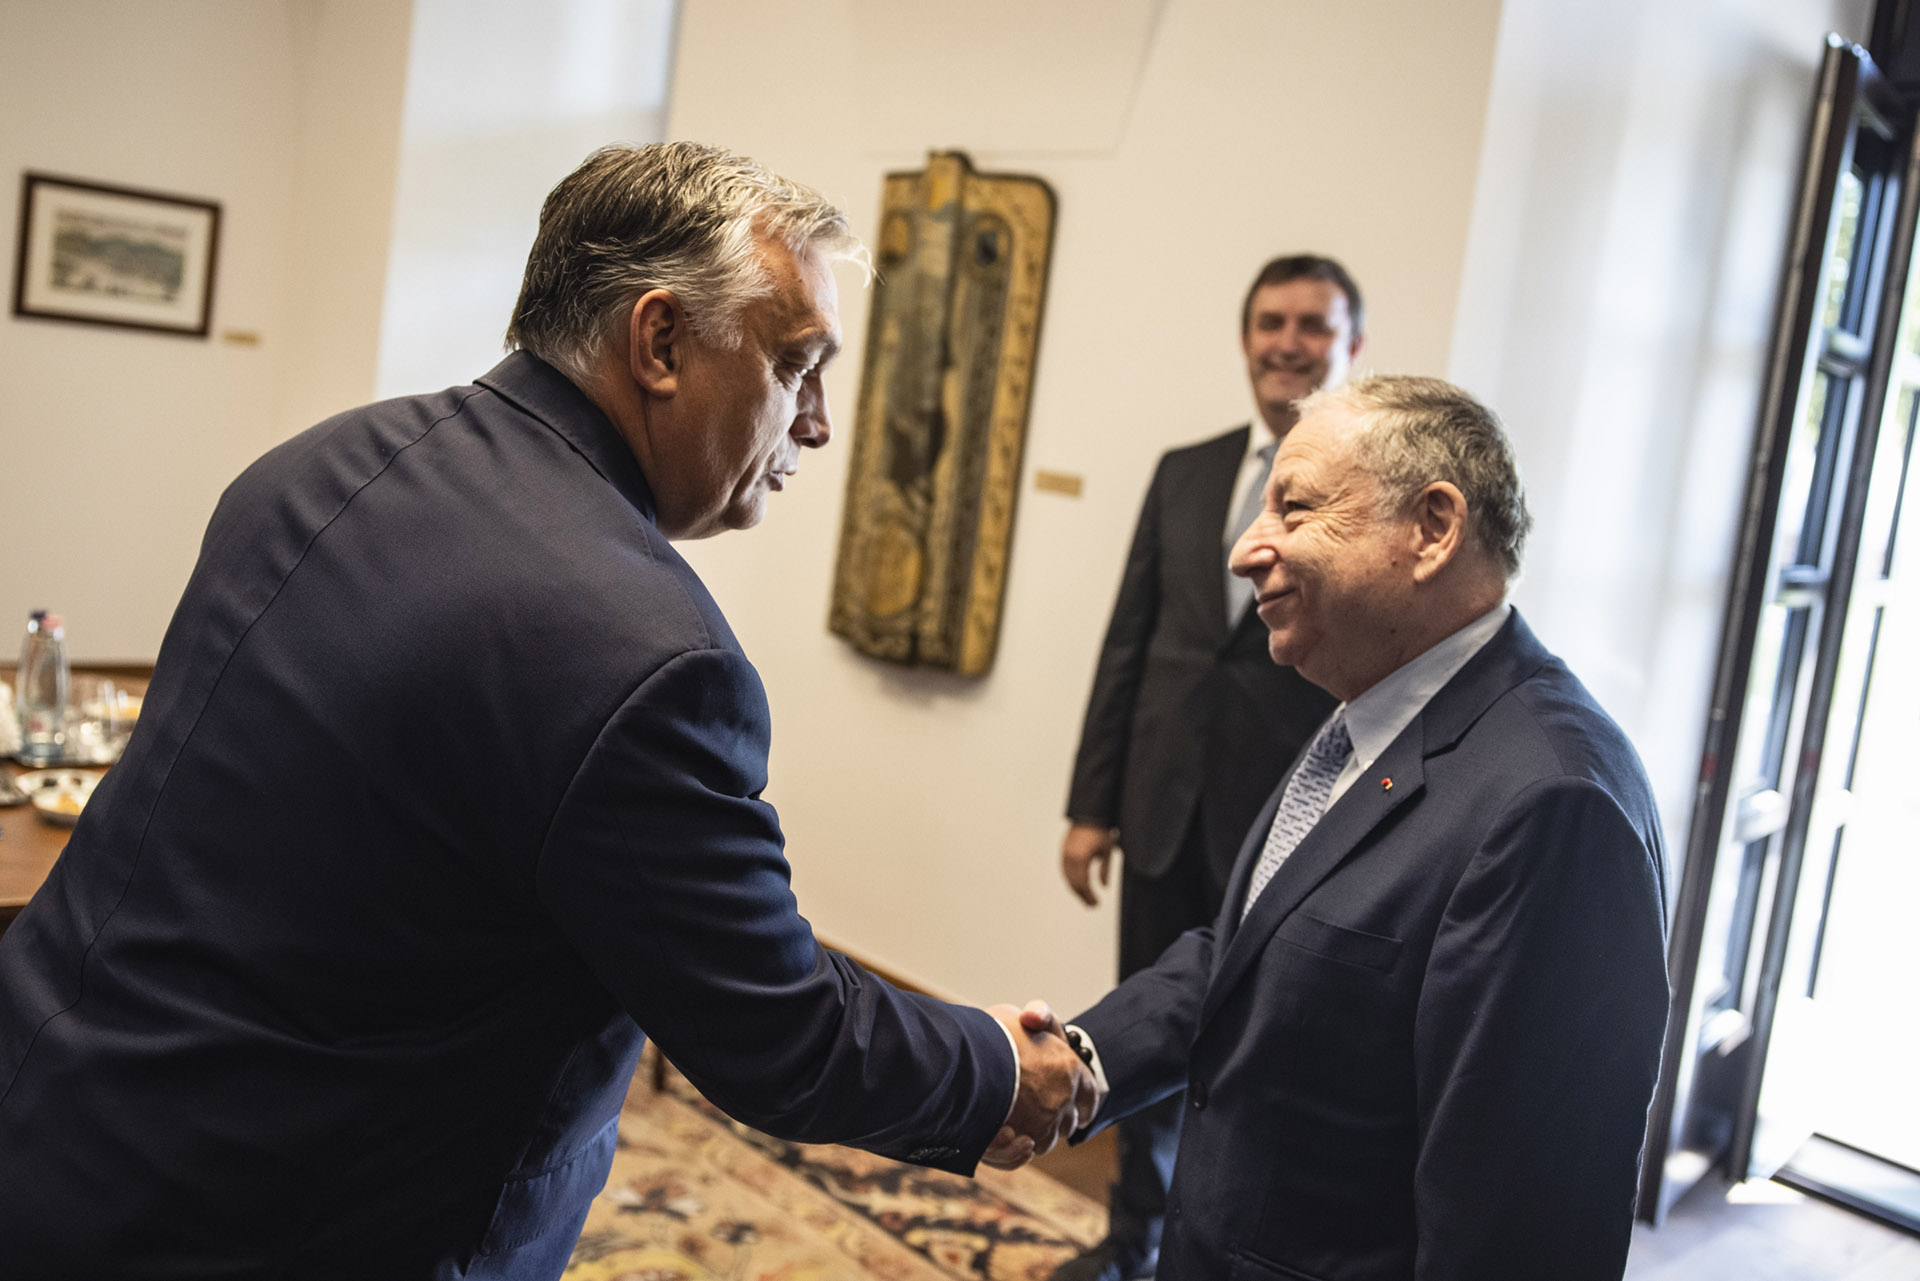 Kiderült, miért nem adott interjút Orbán Viktor a közrádiónak